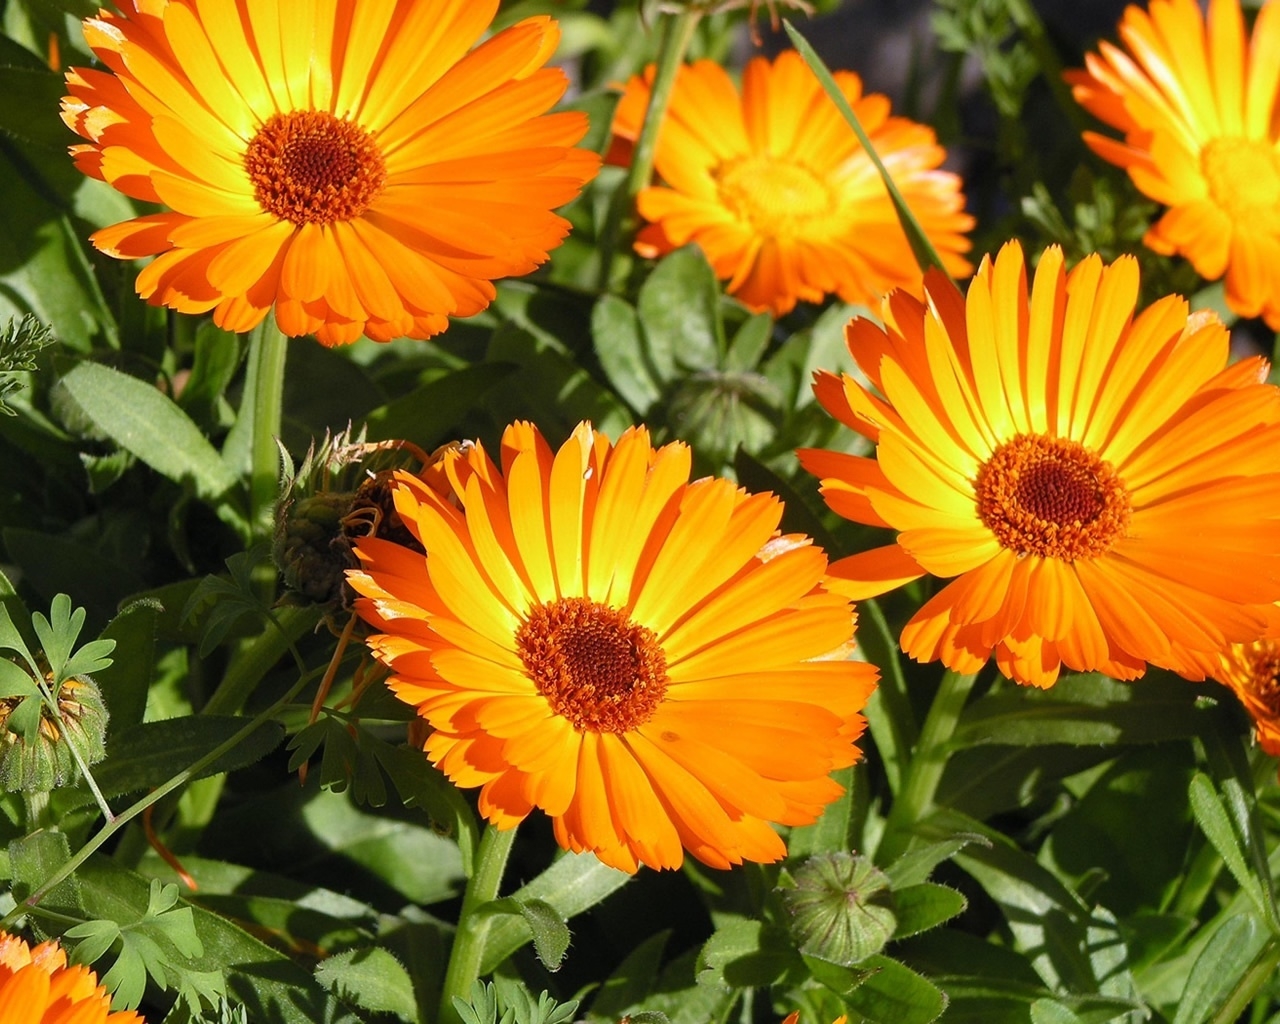 Sunbathing Flower for 1280 x 1024 resolution